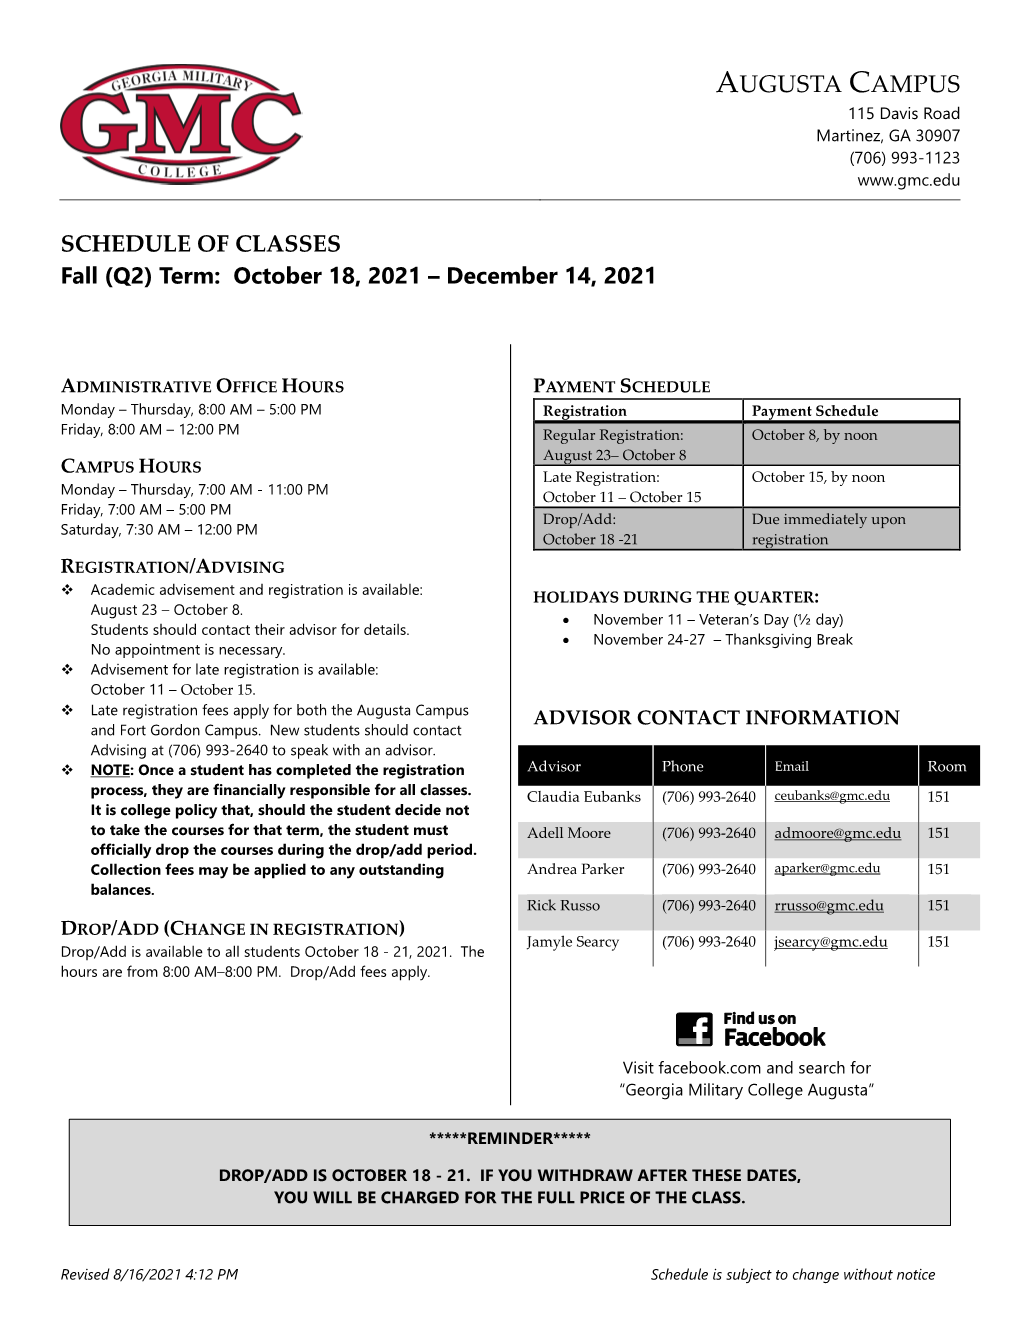 Augusta Campus Schedule Of